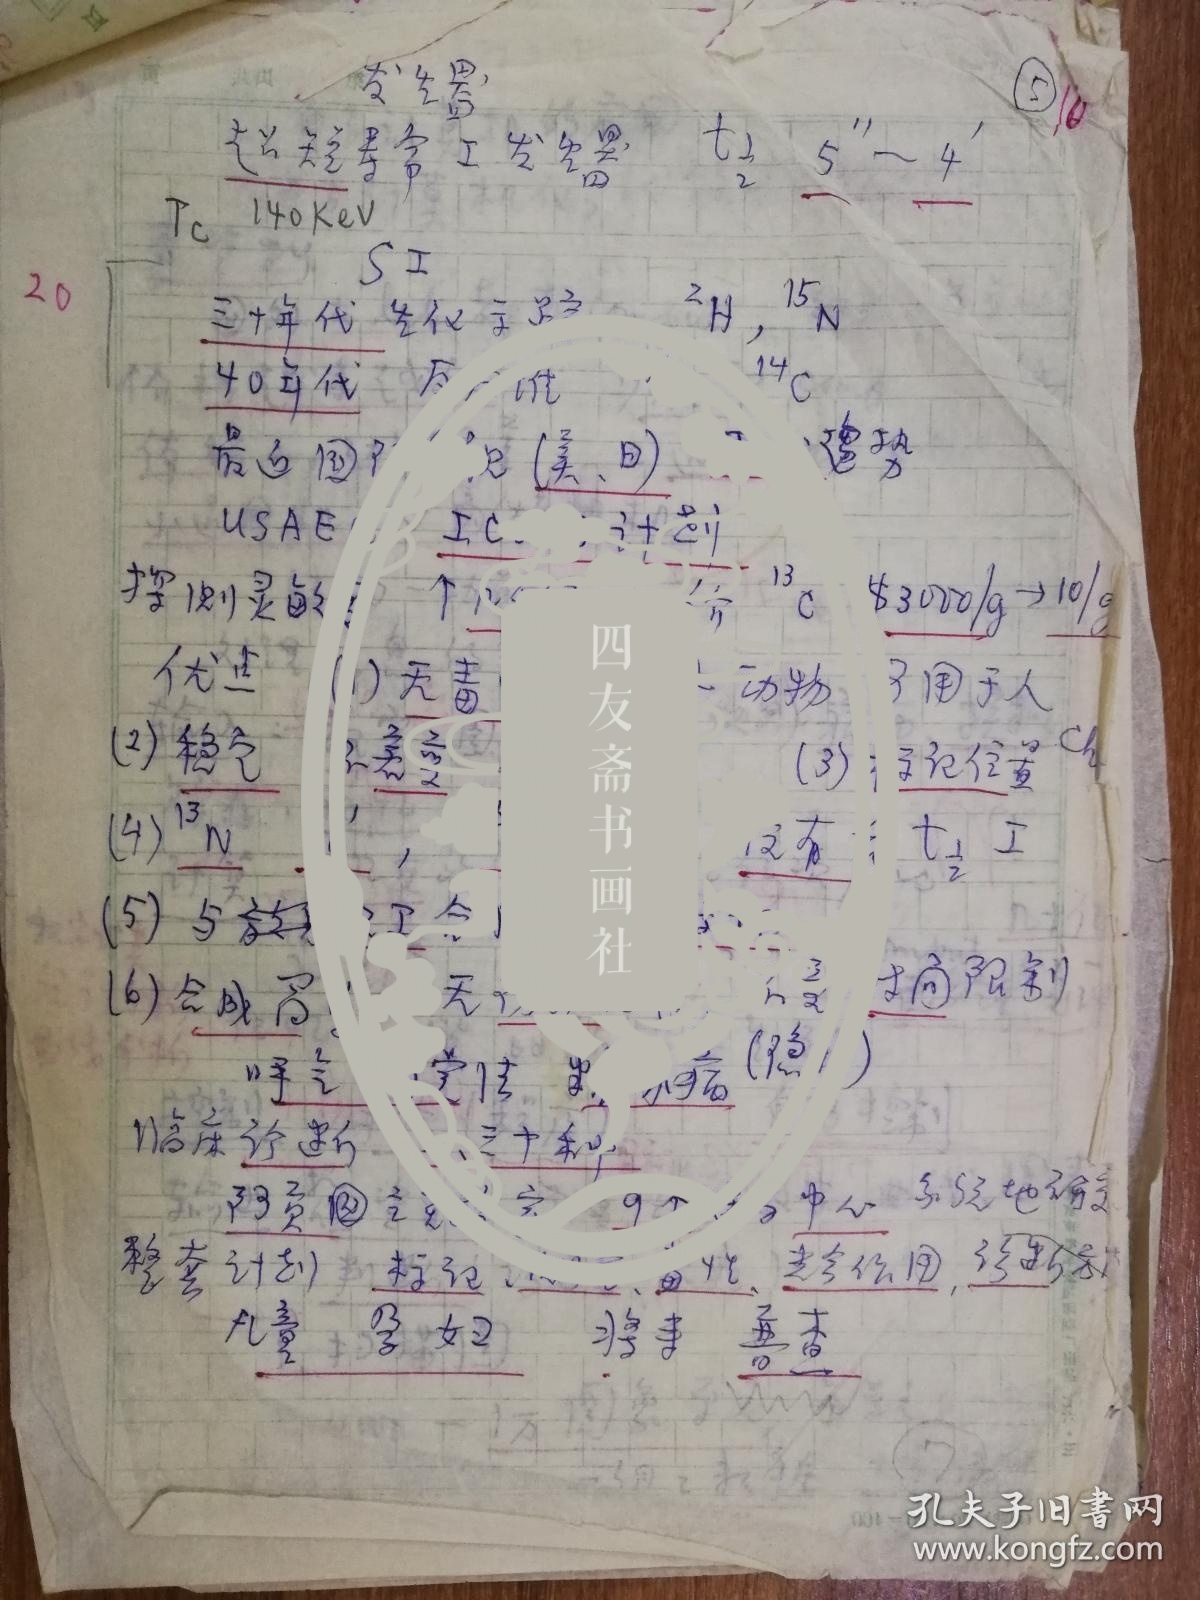 已故中国科学院院士中国核医学奠基人王世真手稿17页